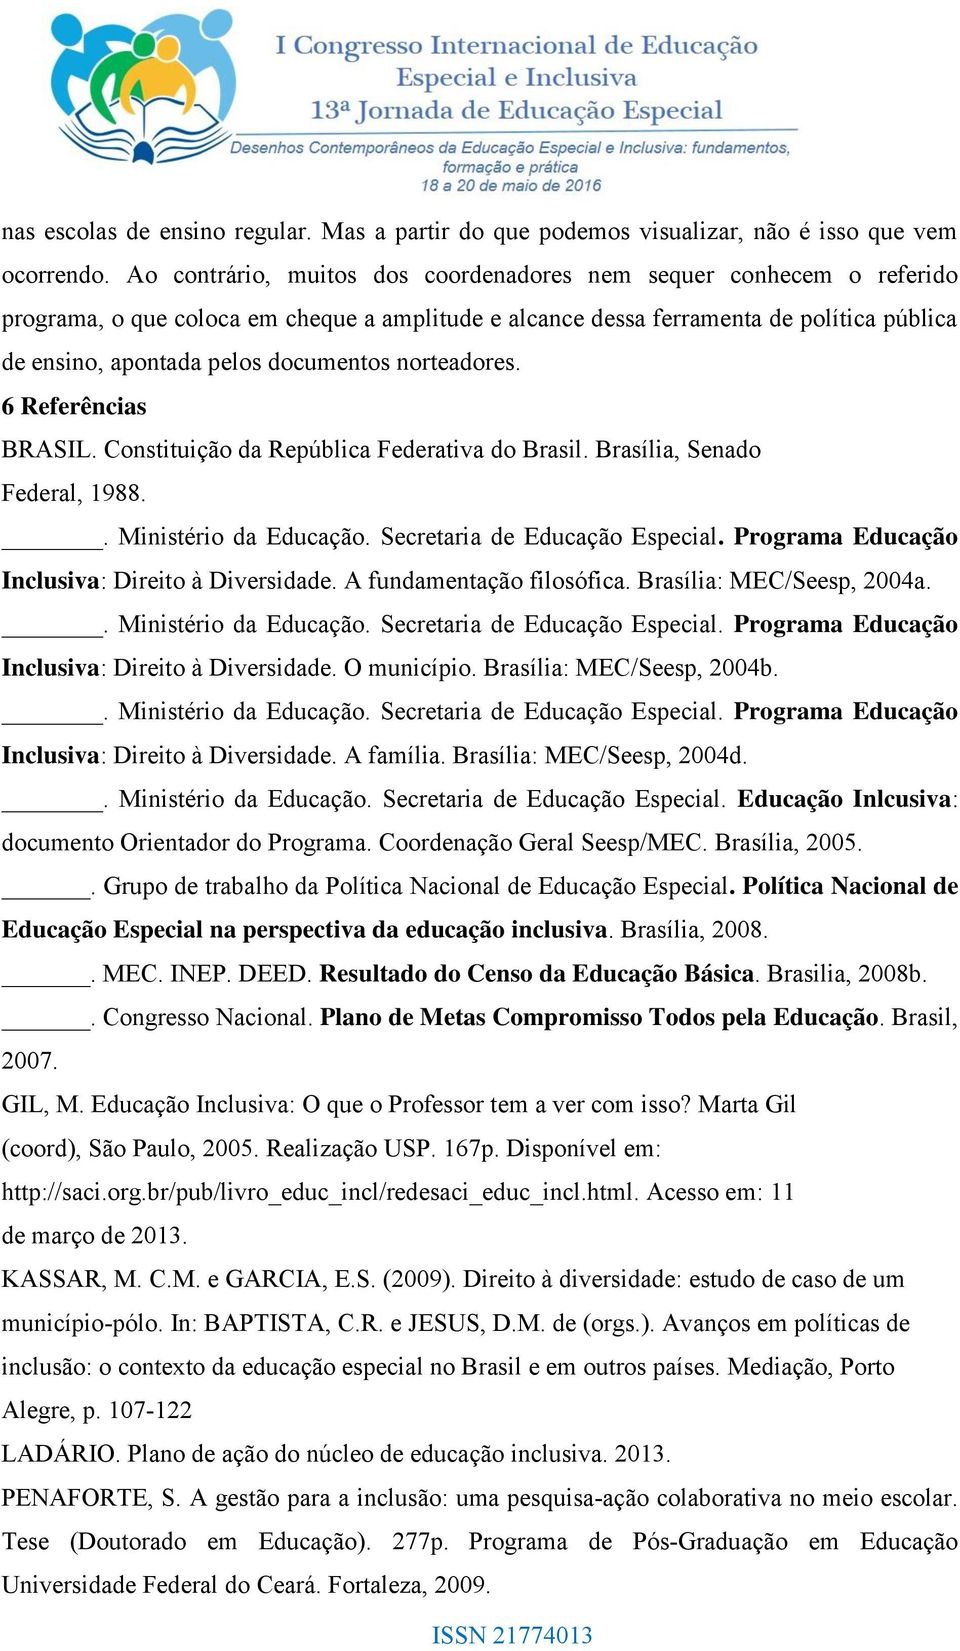 norteadores. 6 Referências BRASIL. Constituição da República Federativa do Brasil. Brasília, Senado Federal, 1988. Inclusiva: Direito à Diversidade. A fundamentação filosófica.